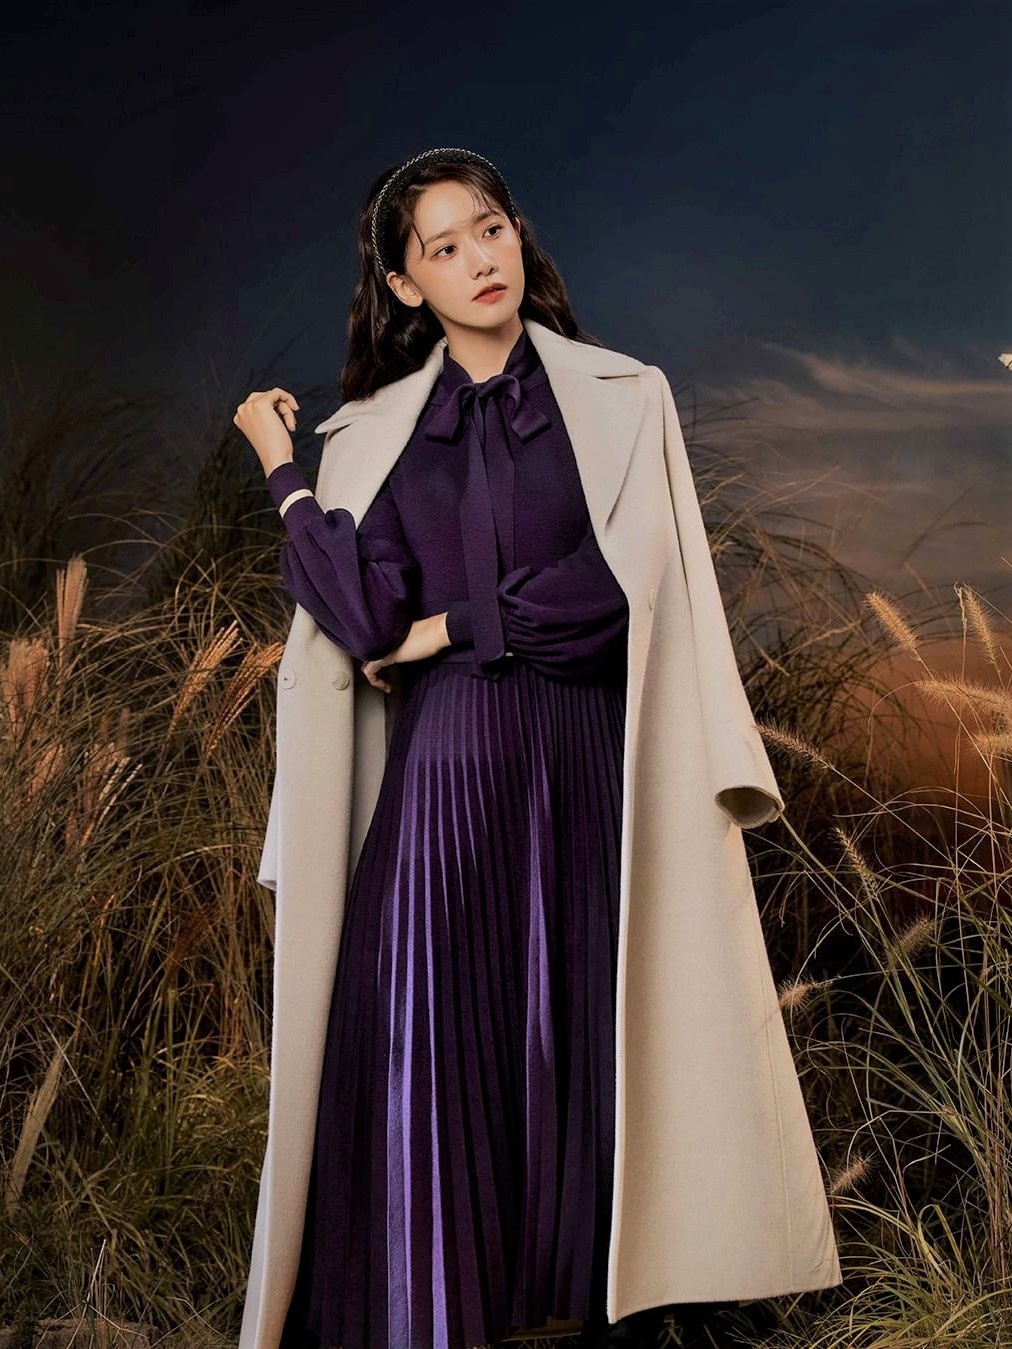 Trench coat và quy tắc phối đồ 2/3 hack chiều cao của Yoona - ảnh 7